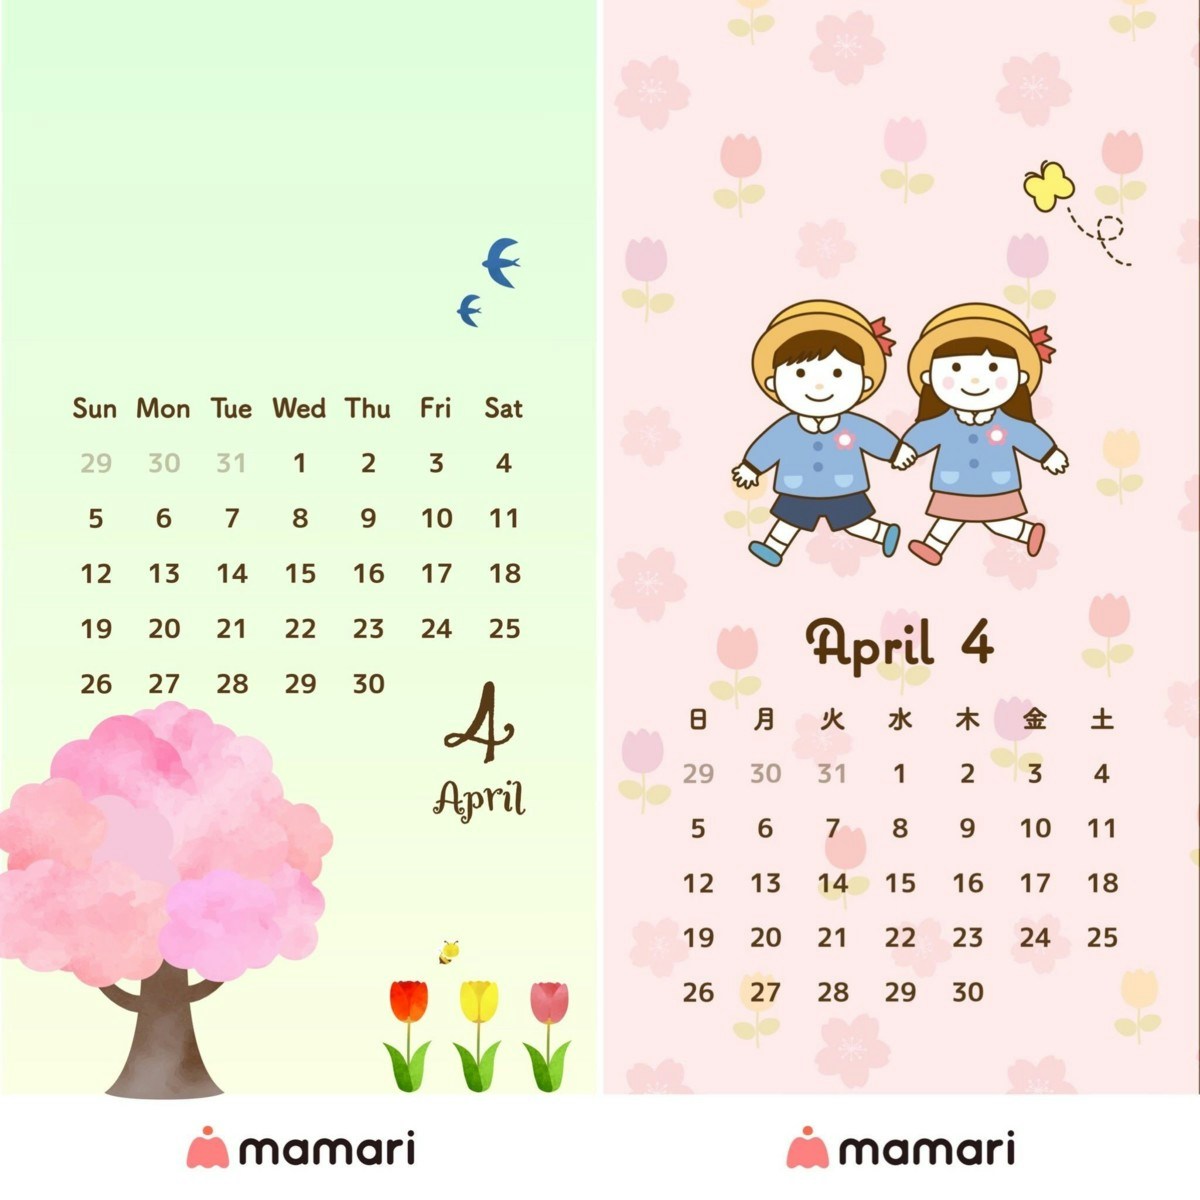 ママリオリジナル 年4月のカレンダー壁紙を無料プレゼント ママリ